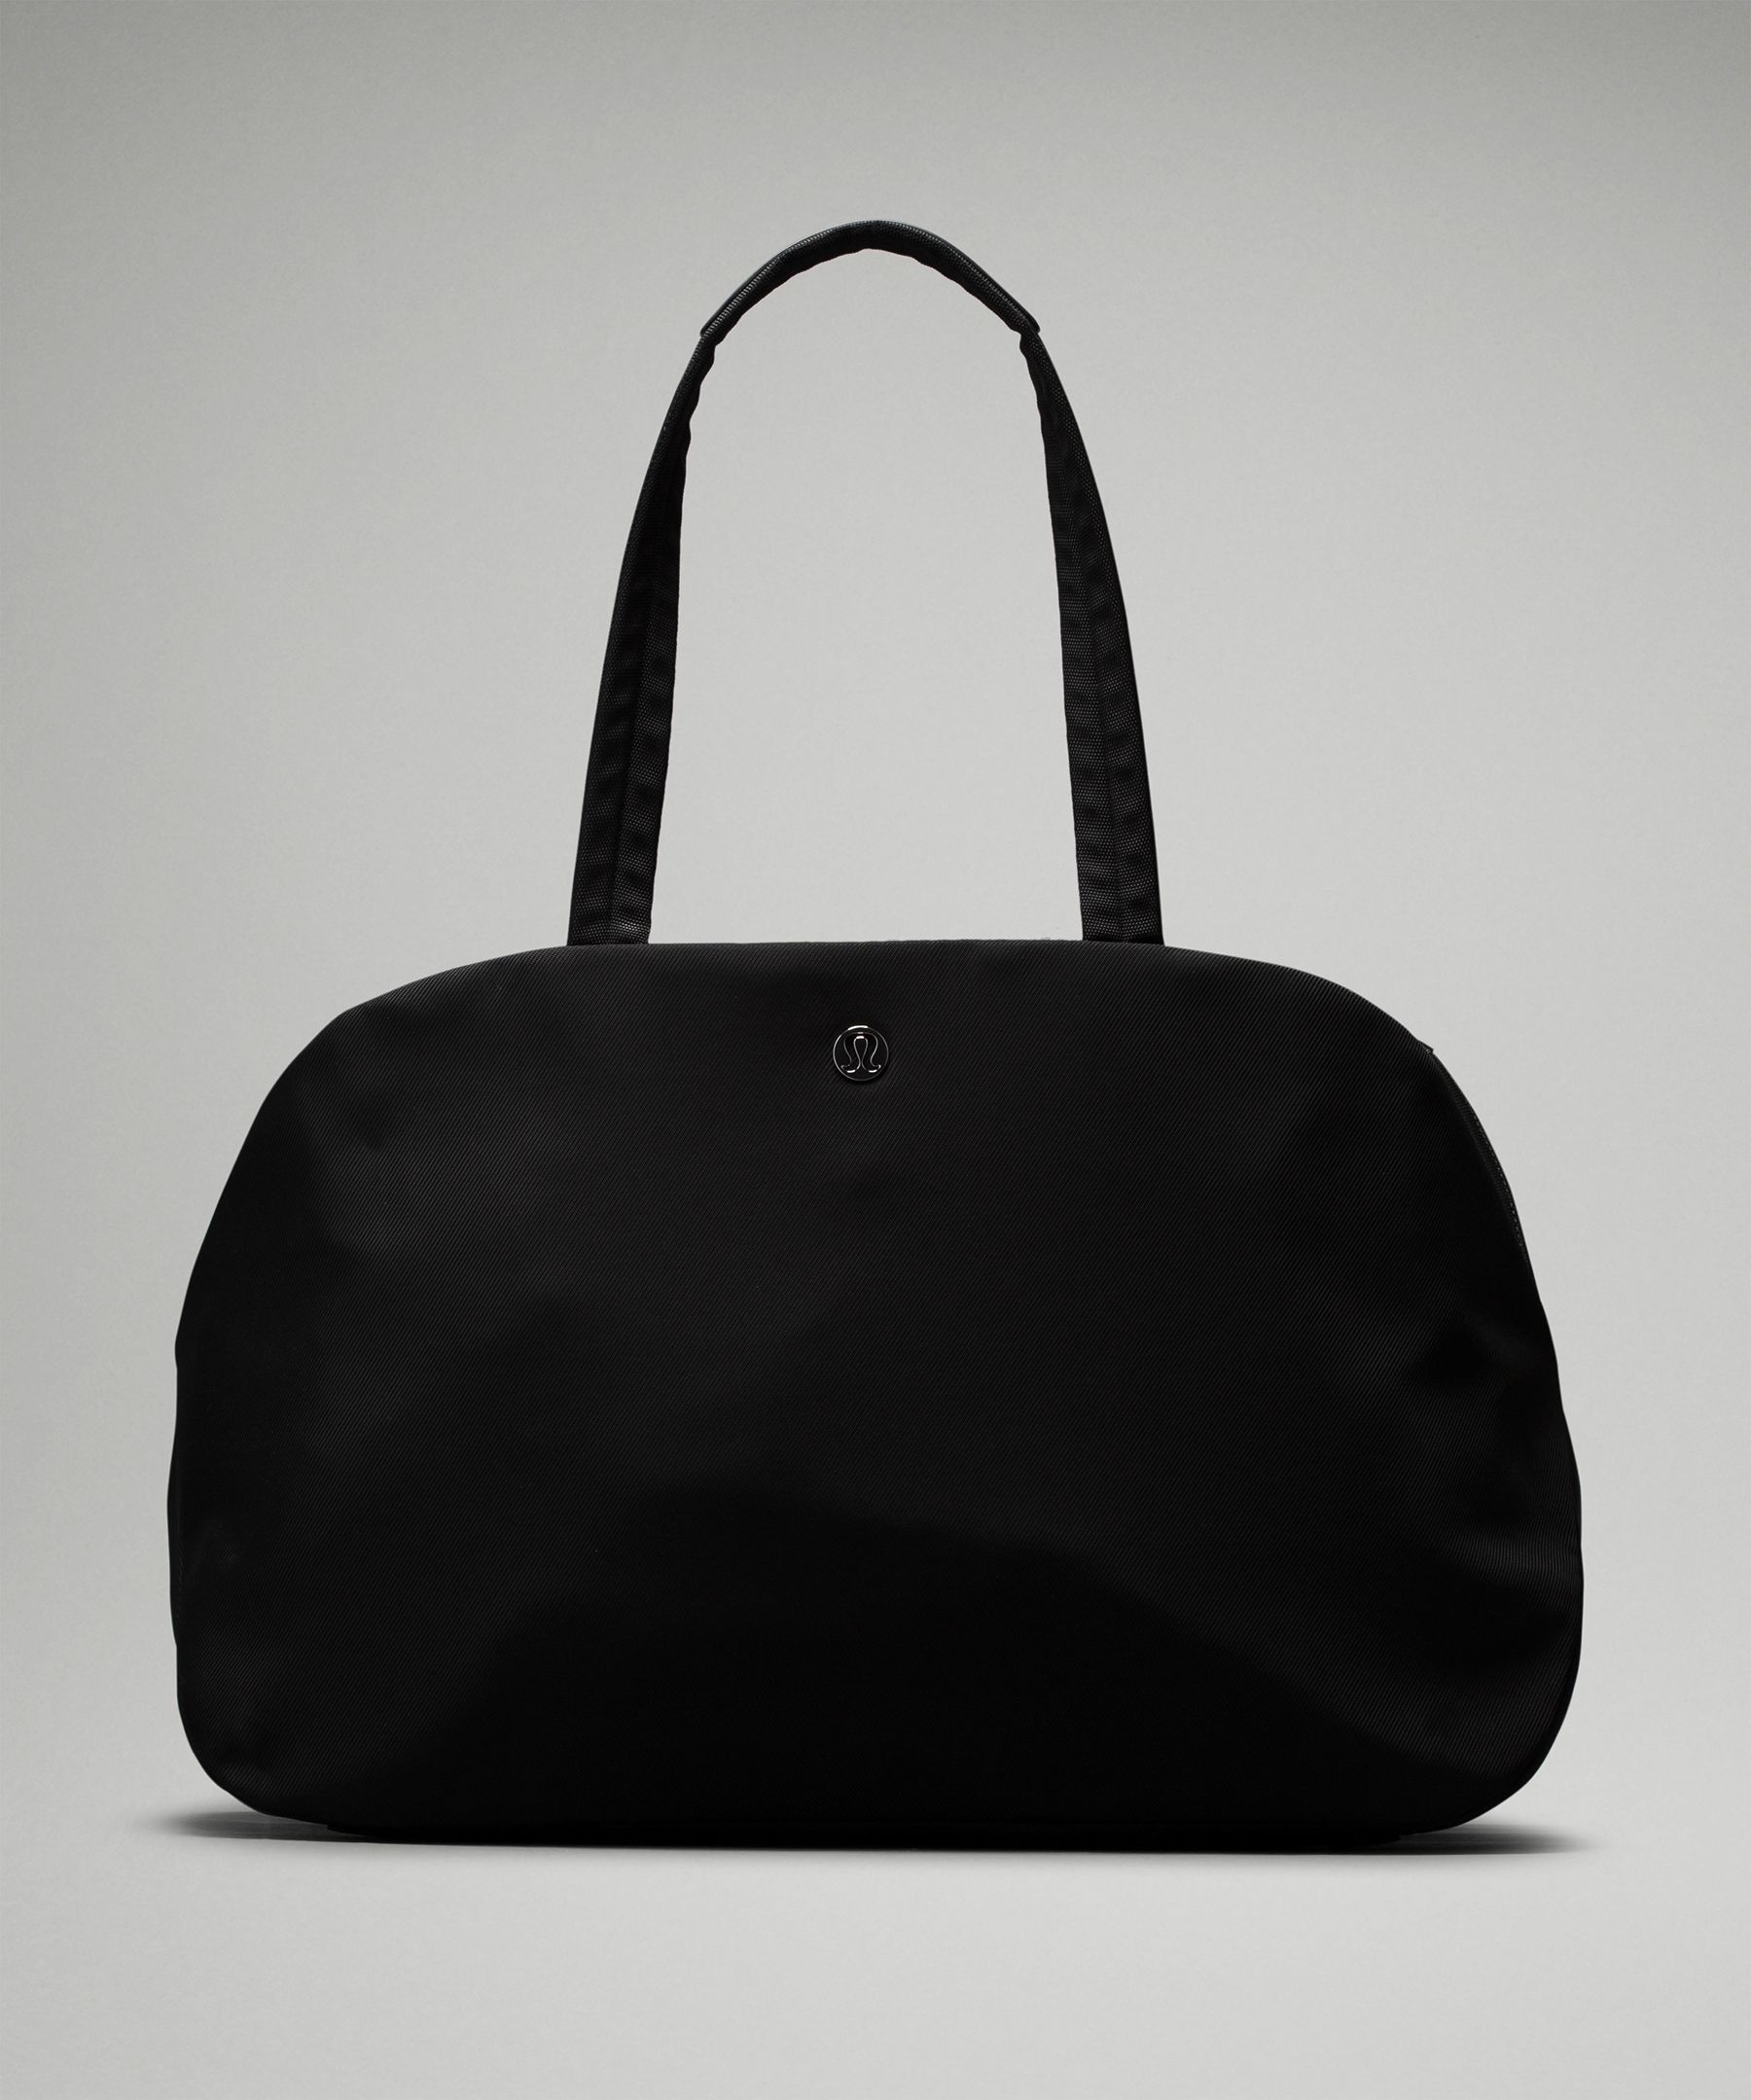 Lululemon Shopping Bags Reusable White with Black Set of 4 - Conseil  scolaire francophone de Terre-Neuve et Labrador